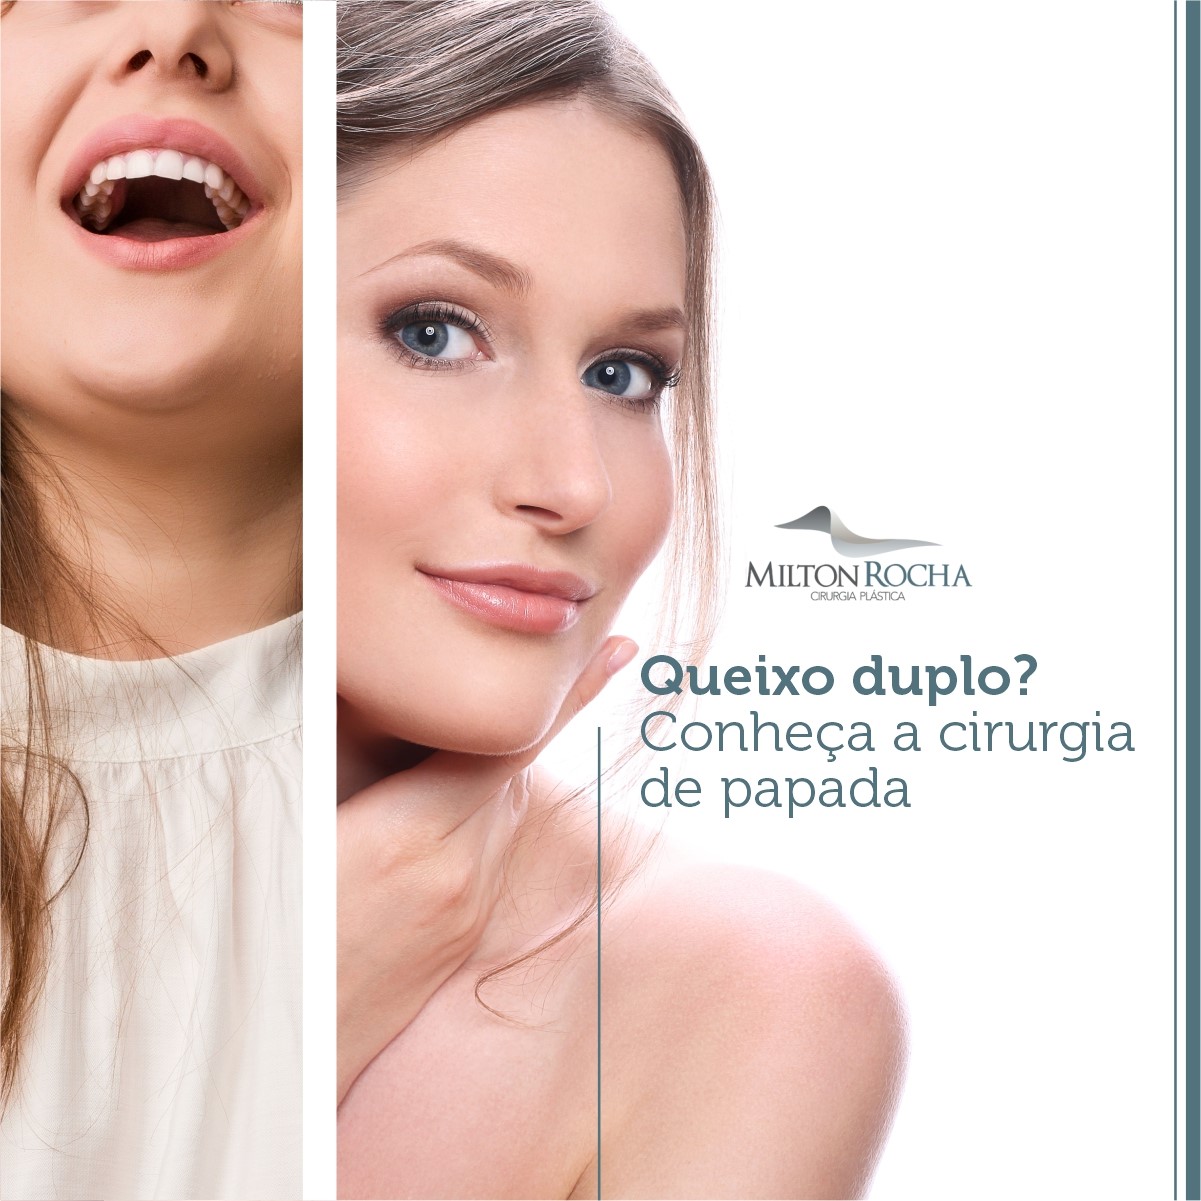 Read more about the article Queixo duplo? Conheça a cirurgia de papada